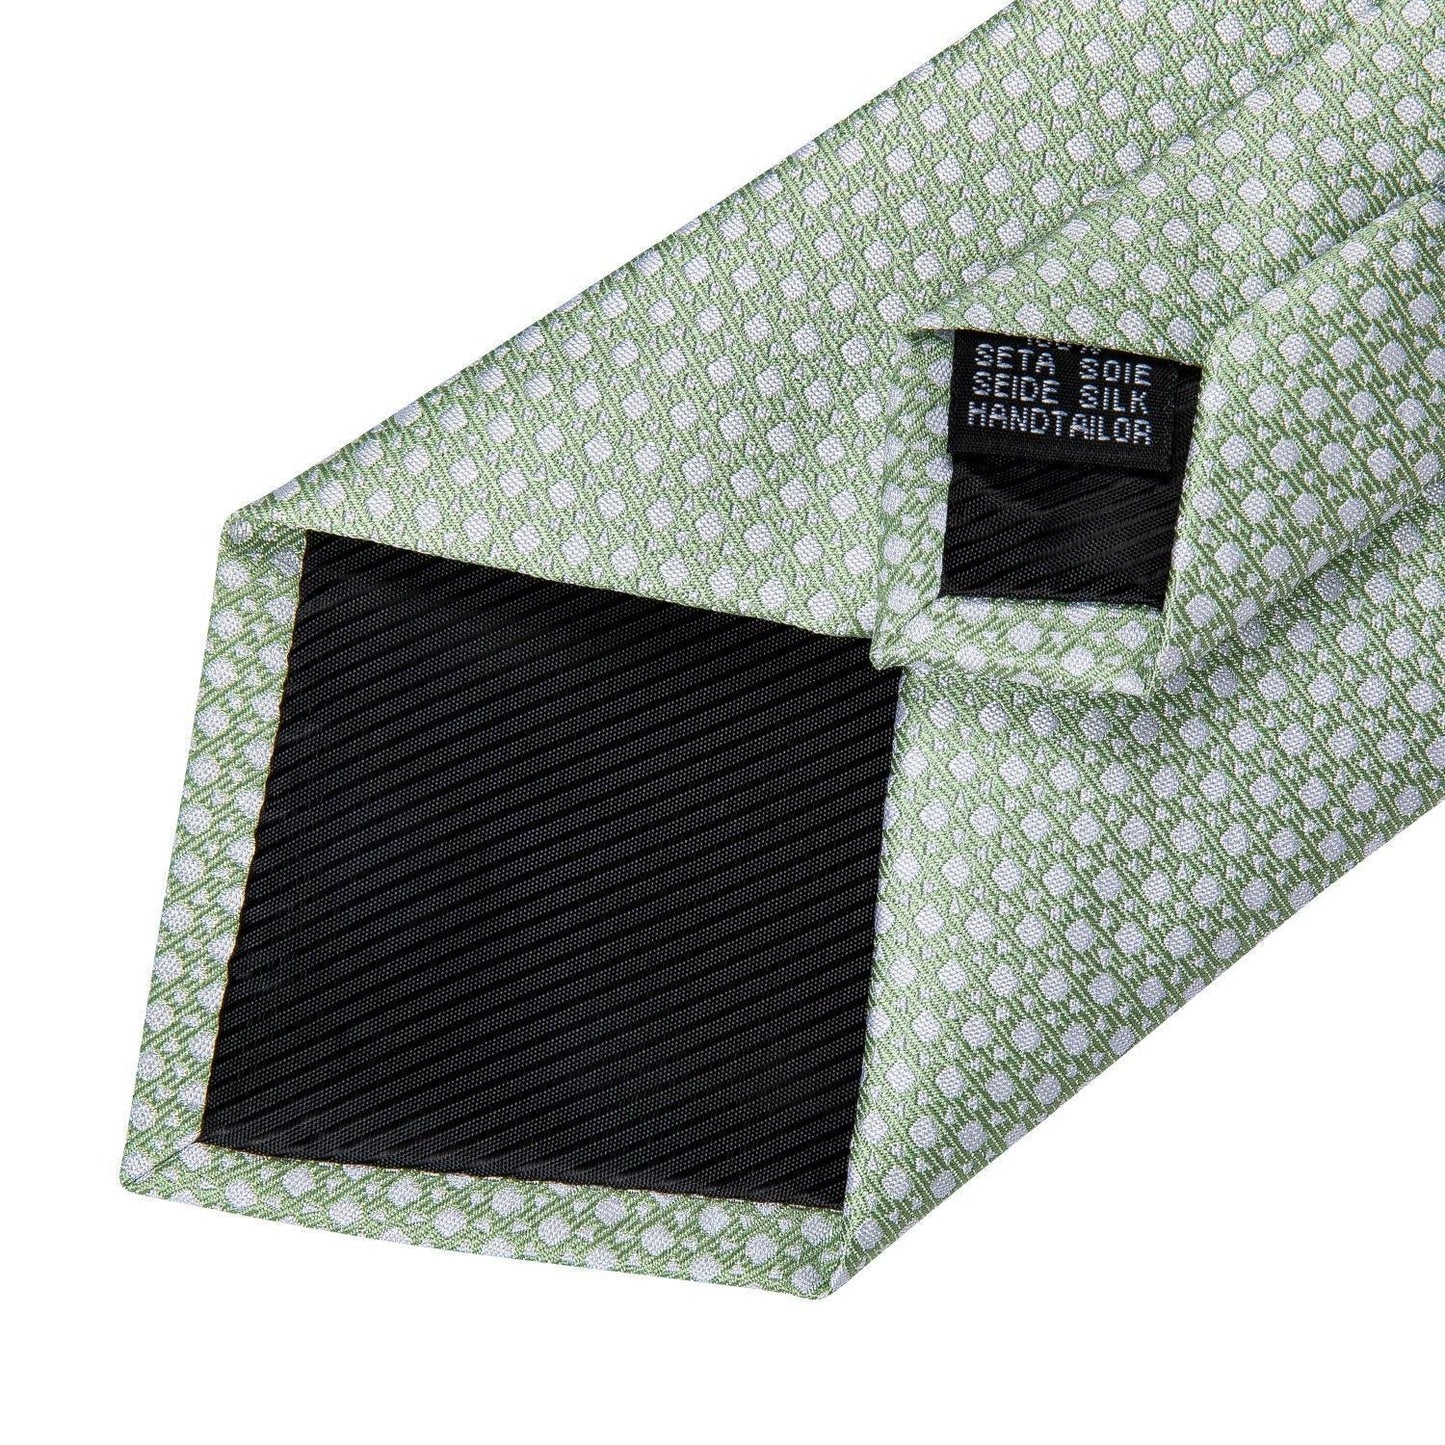 Green Luxury Necktie Set - Necktie - LeStyleParfait